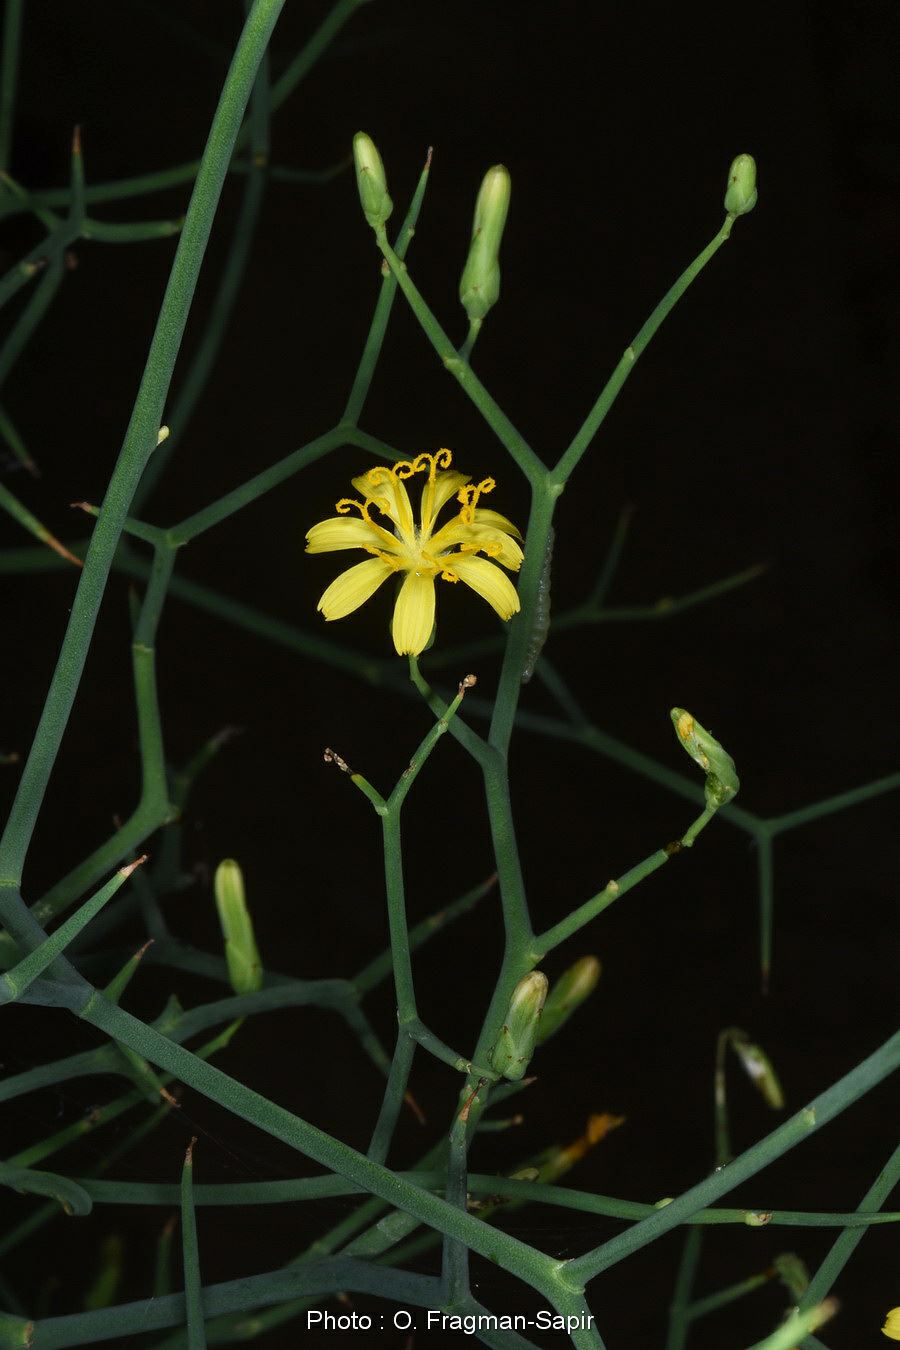 Launaea spinosa - Spiny Launea, לוניאה קוצנית, לוניאה קוצנית